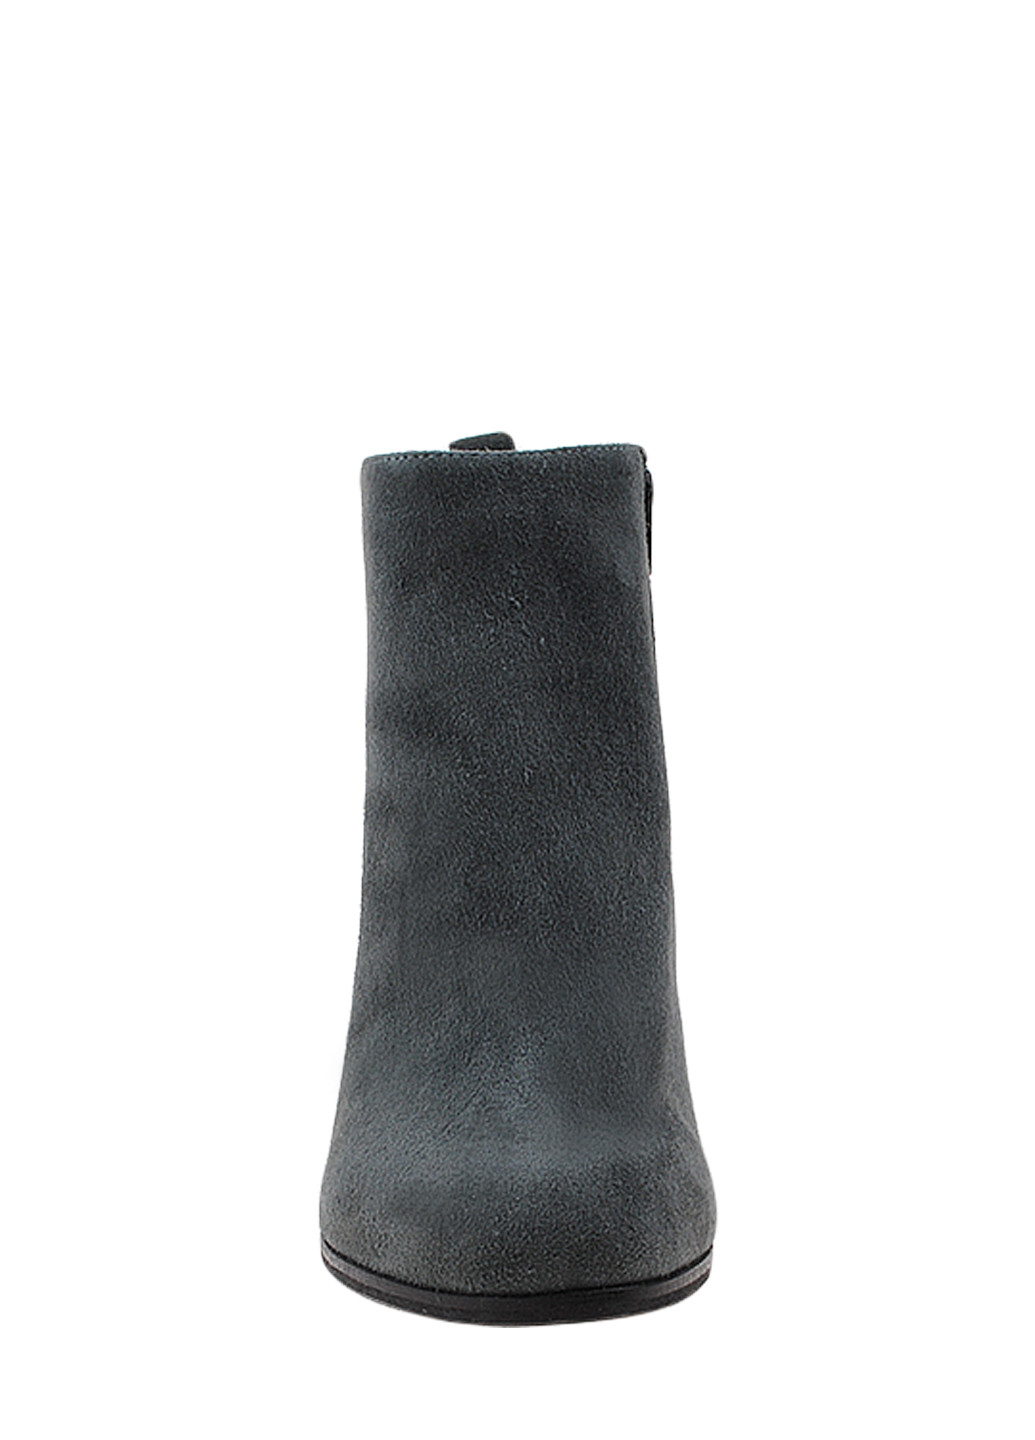 Осенние ботинки rn06-3-157-11 серый Tuto из натуральной замши